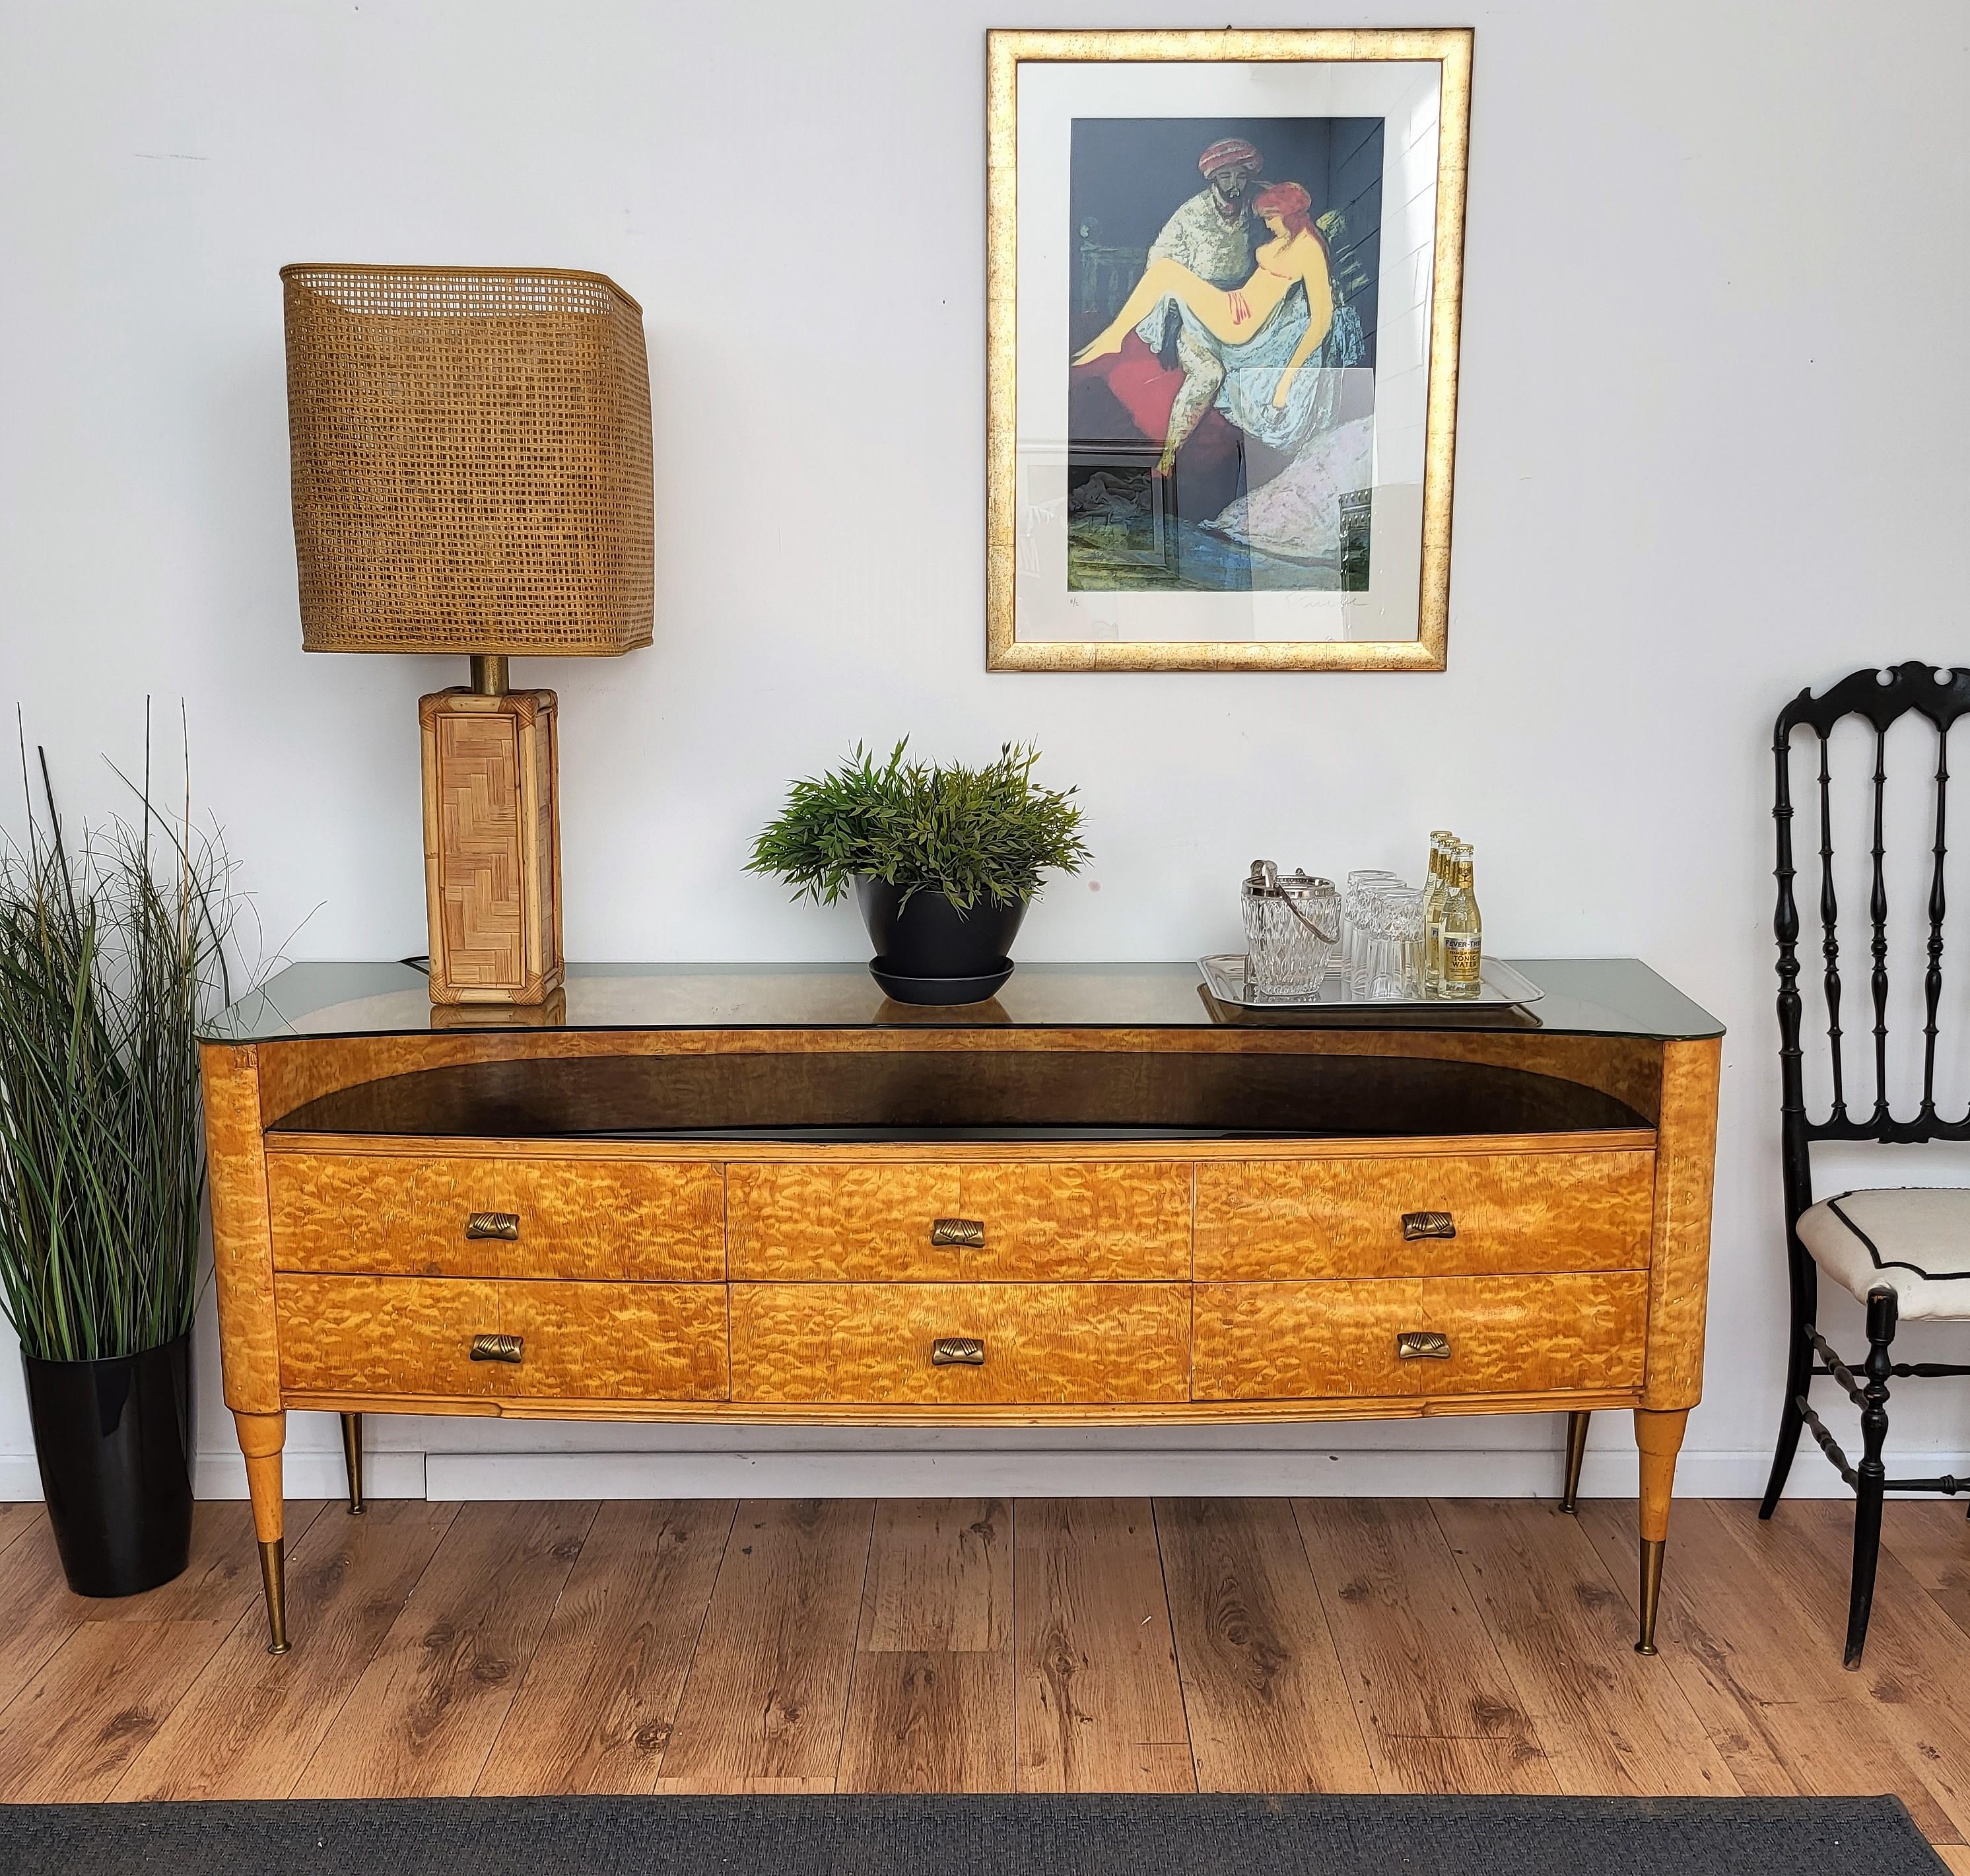 Schönes italienisches Sideboard, Kredenz, Buffet aus den 1950er Jahren mit sehr eleganten Formen und klassischem Holz, das entsprechend seiner natürlichen hellen Maserung bearbeitet wurde. Dieses großartige Möbelstück hat 6 Schubladen auf der